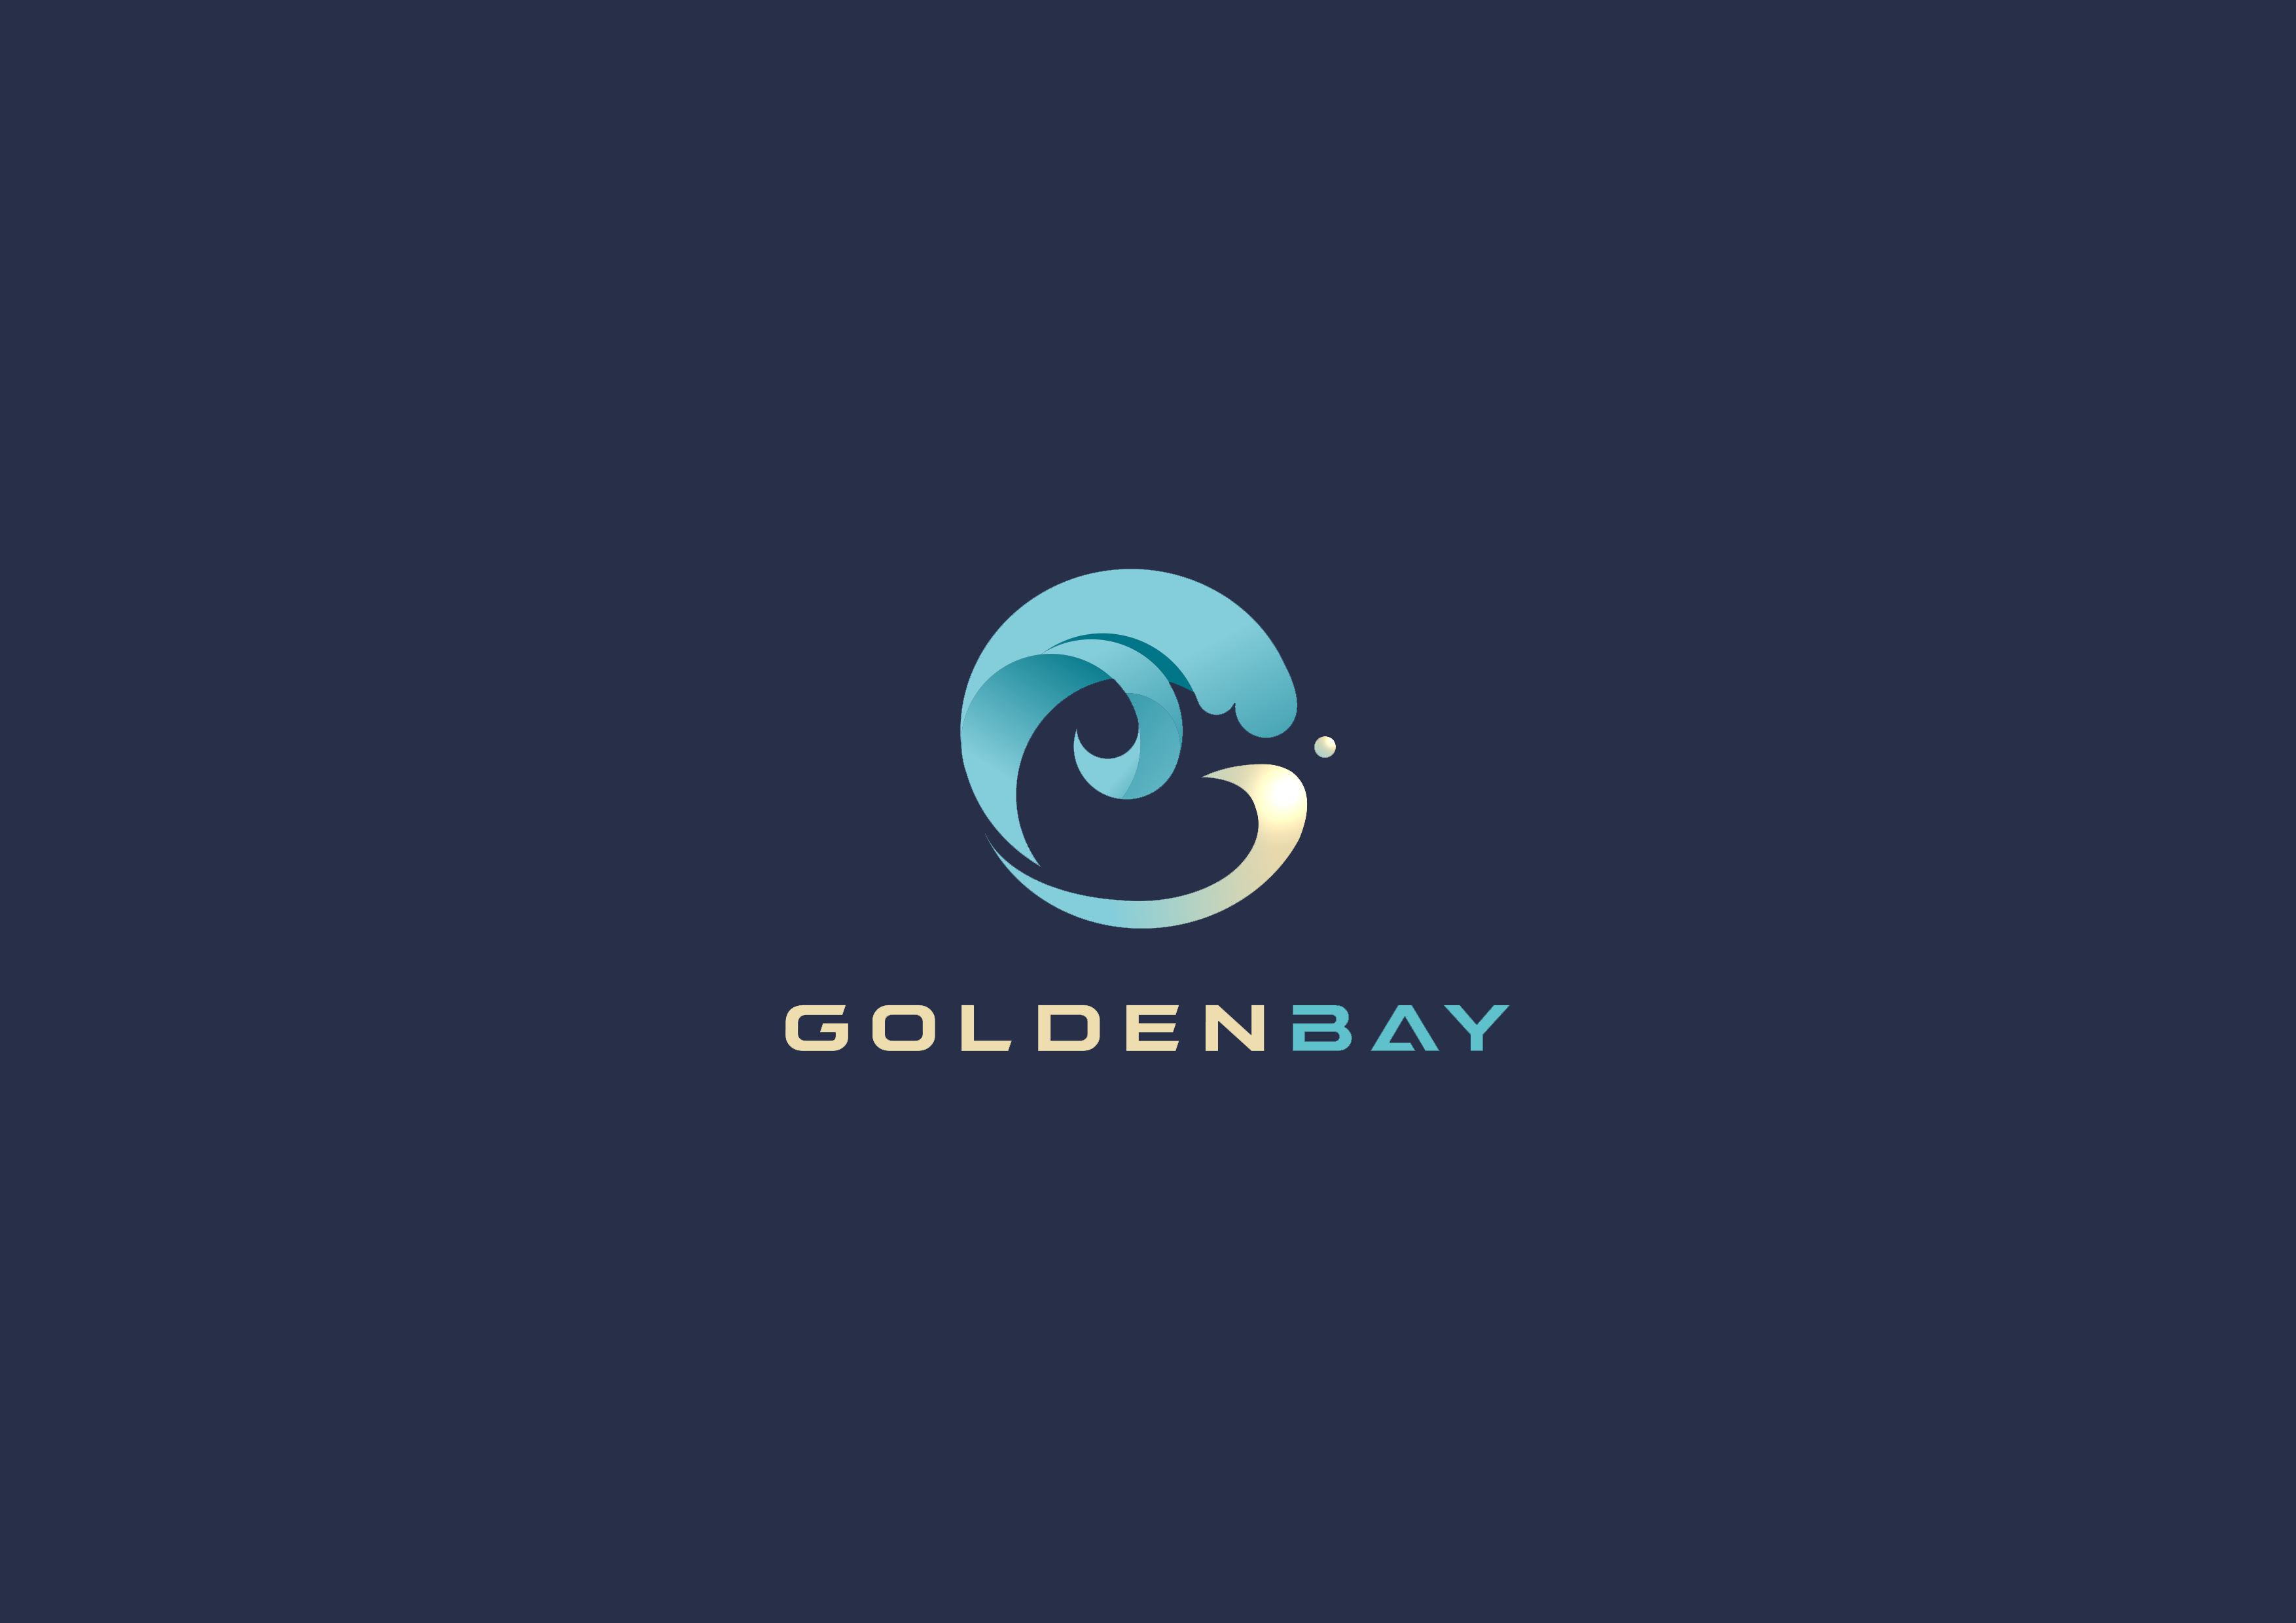 GB Goldenbay 是其中一家列示在乐游国际GamingSoft供应商数据库里的博彩软件提供商 - 乐游国际GamingSoft